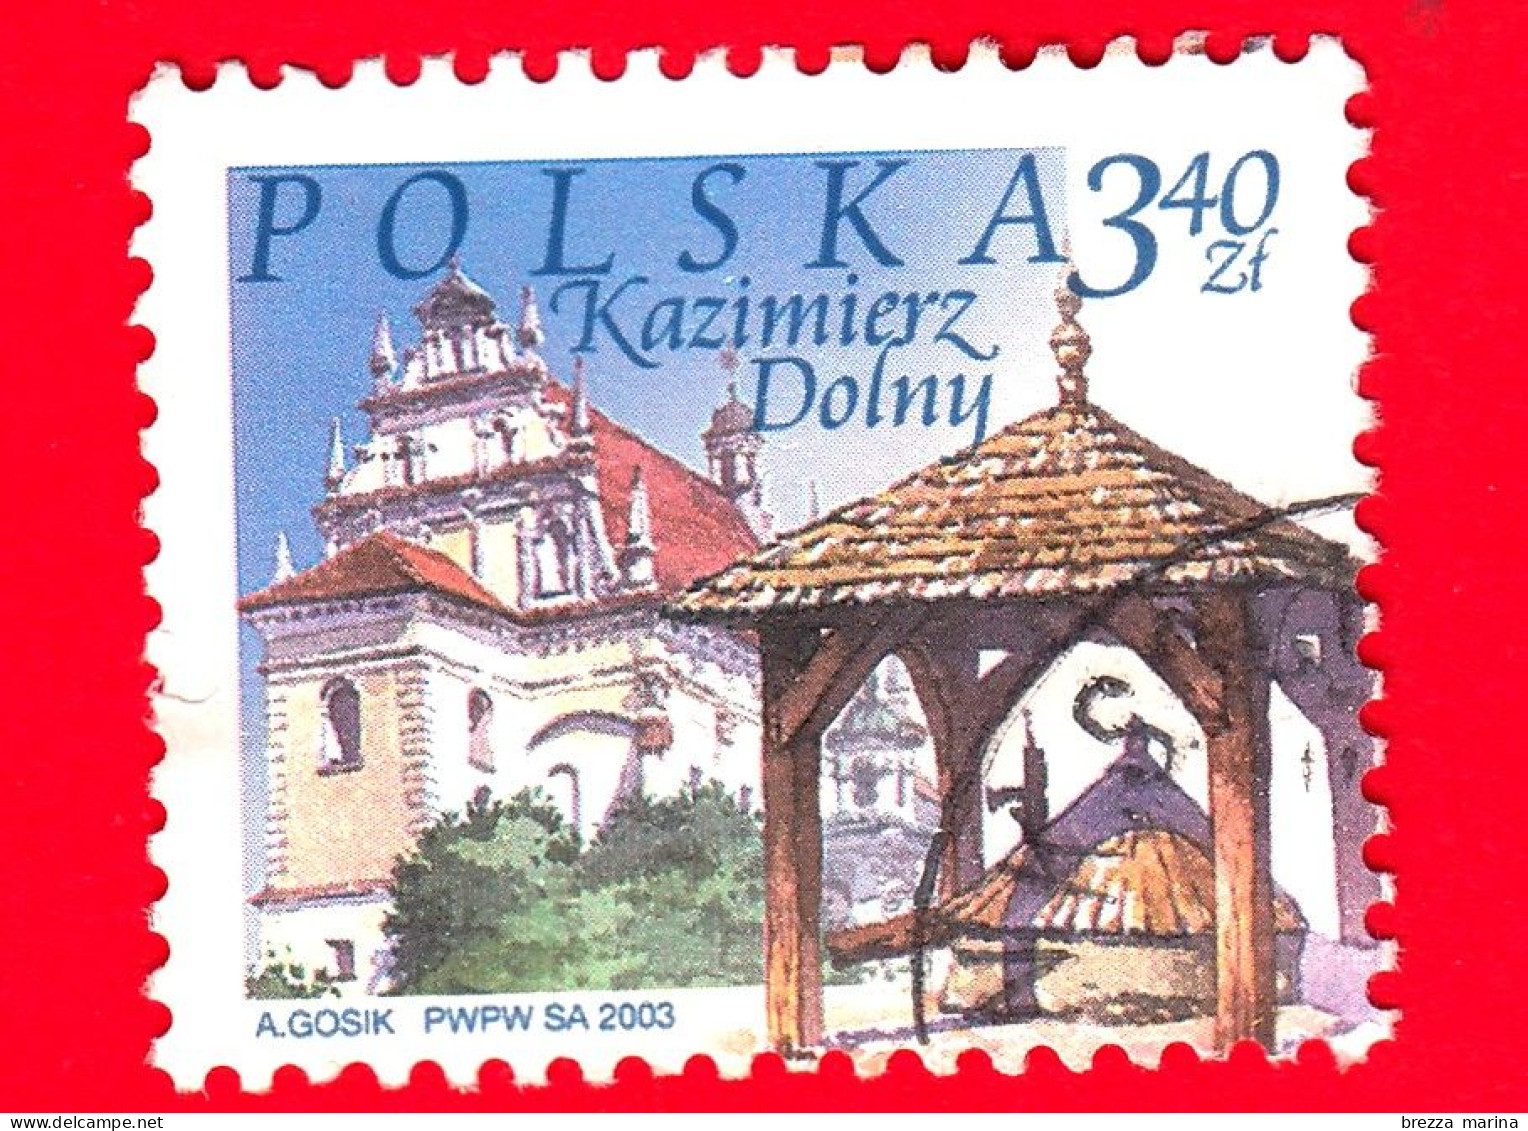 POLONIA - Usato - 2003 - Luoghi D'interesse Di Città Polacche - Chiesa E Pozzo, Kazimierz Dolny - 3.40 - Used Stamps